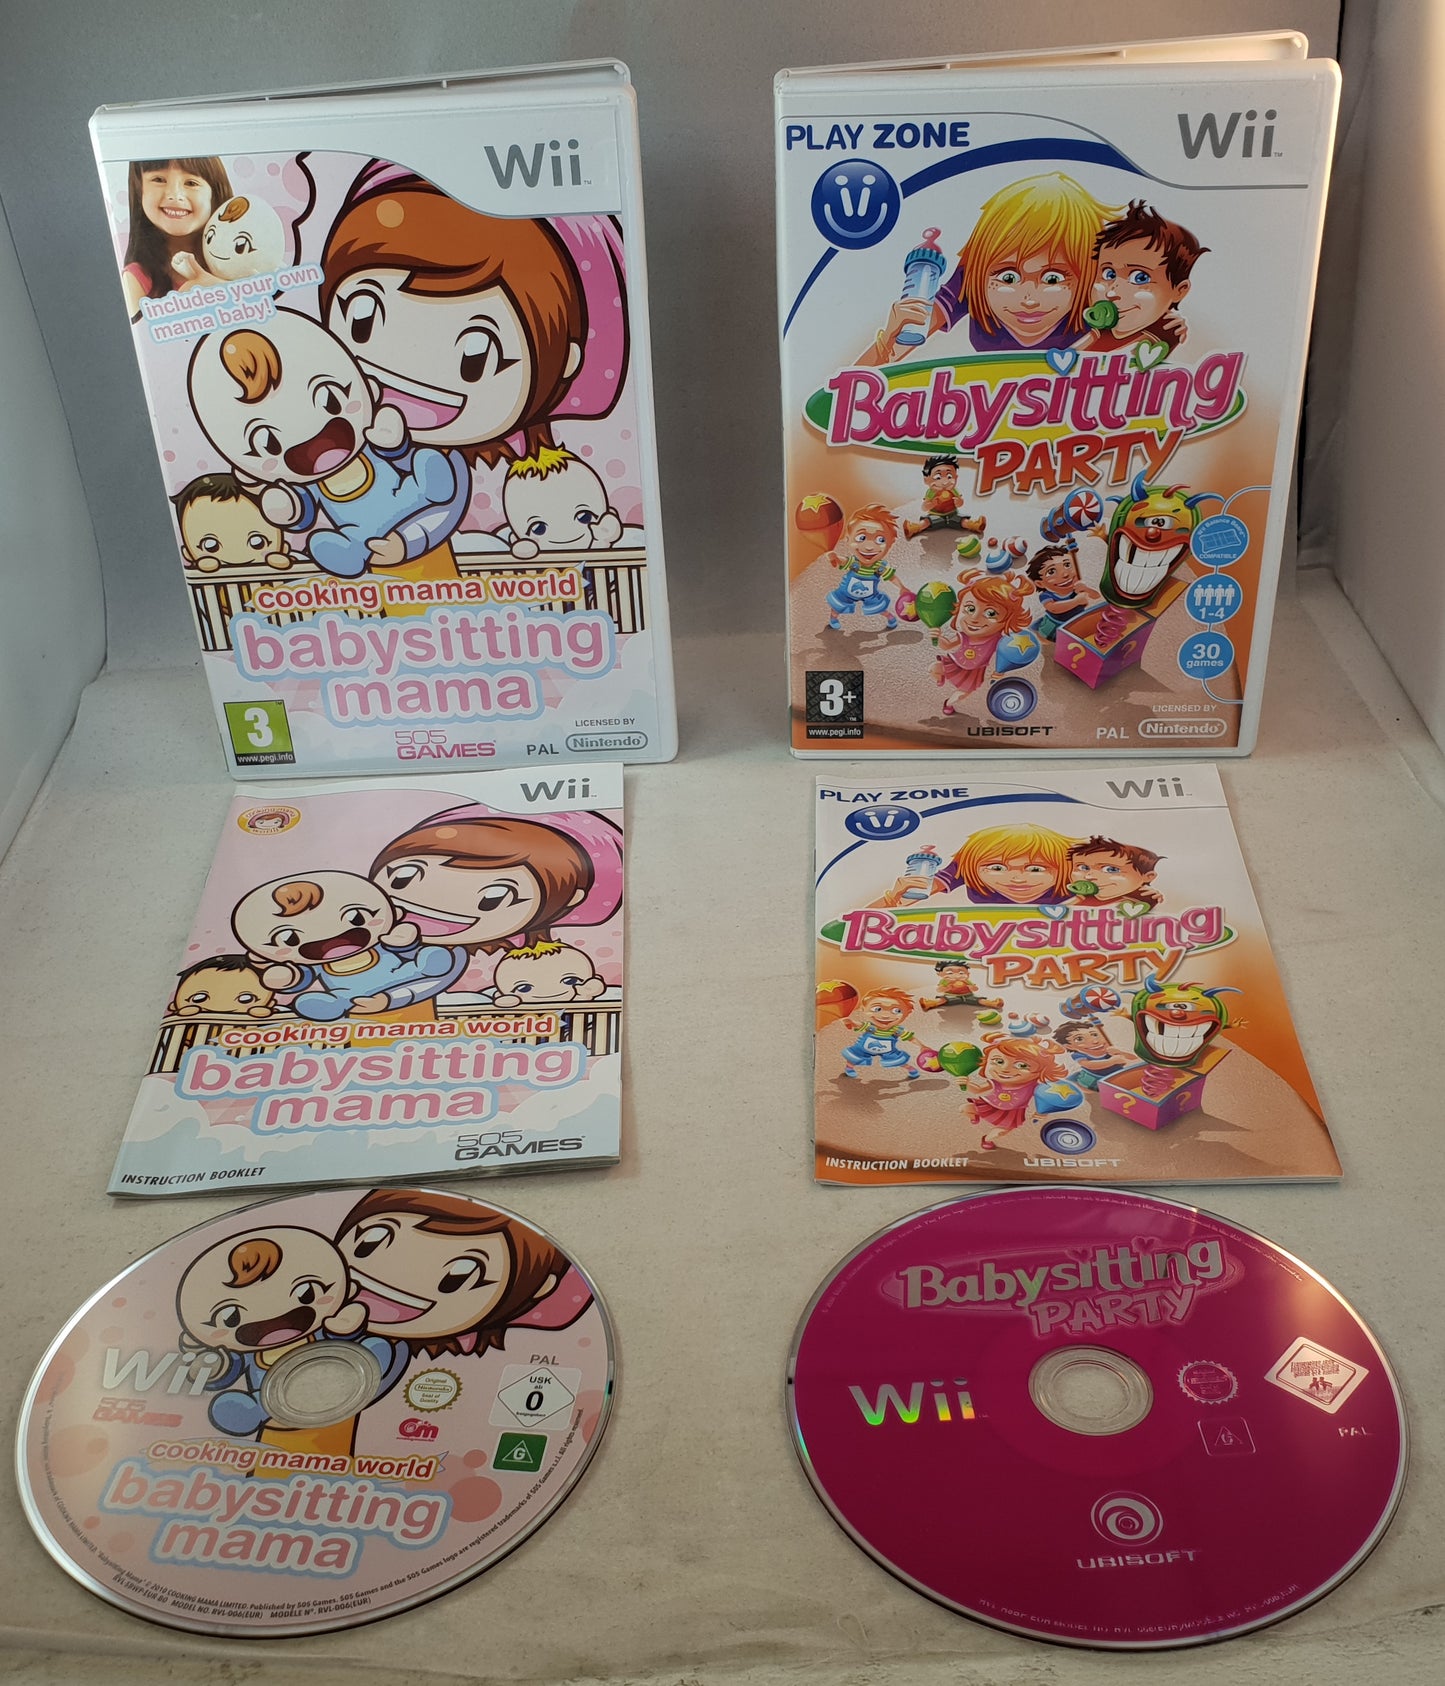 Babysitting Party & Babysitting Mama Nintendo Wii Game Bundle (Baby not Included)